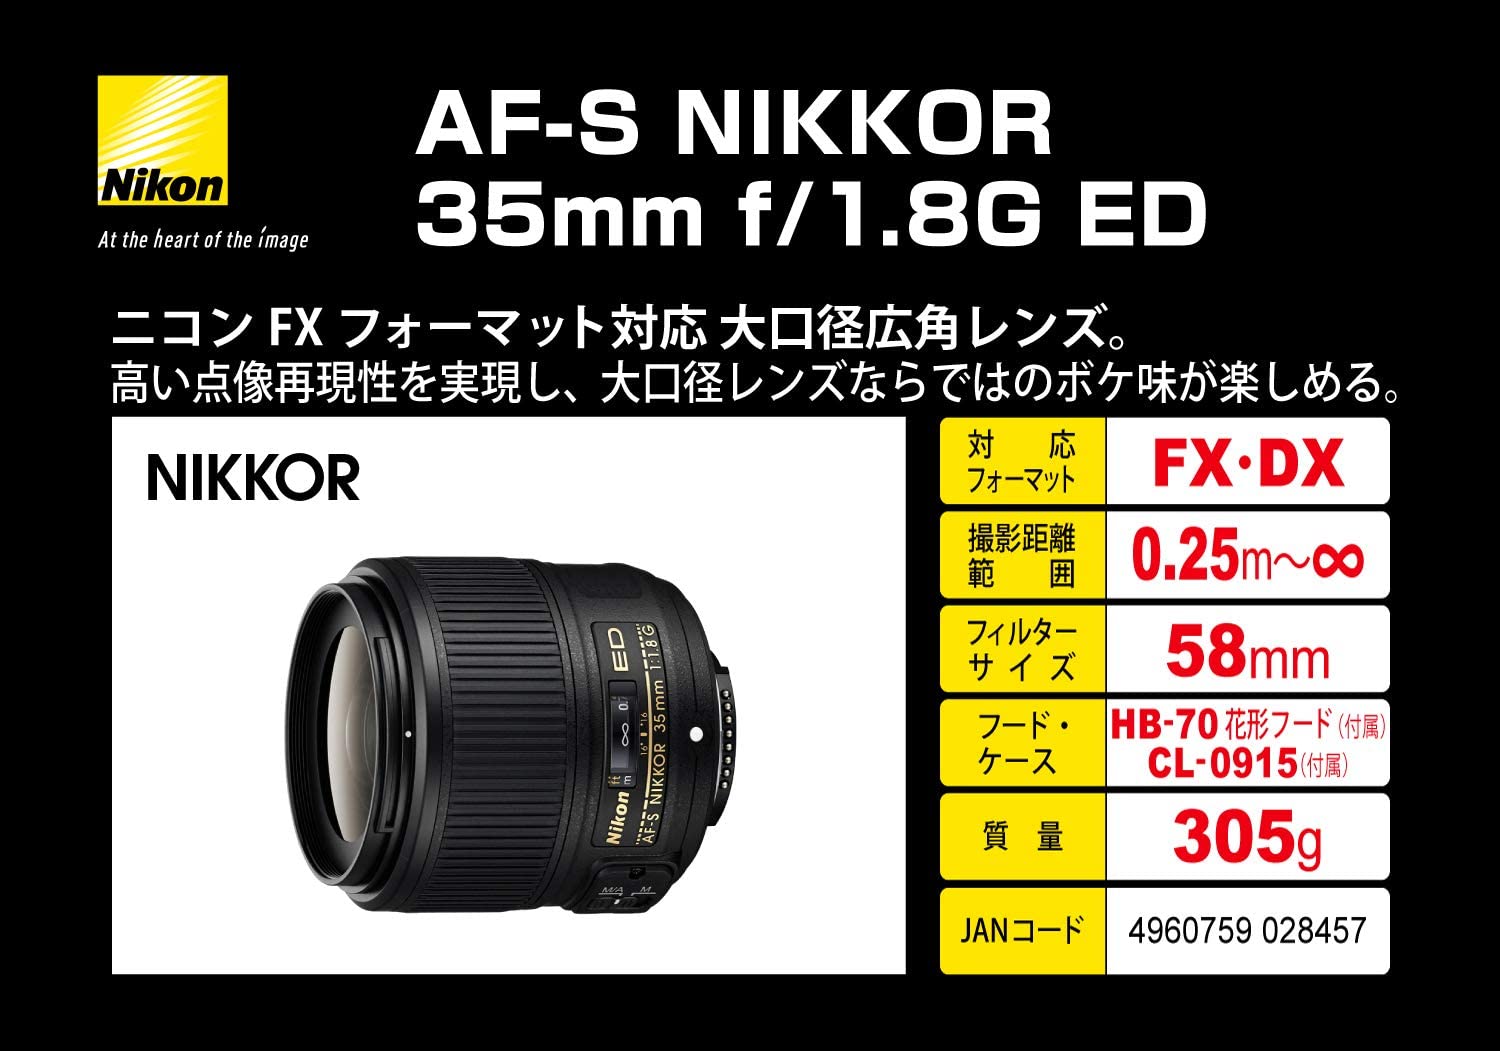 Nikon single focus lens AF S NIKKOR mm f / 1.8G ED full size